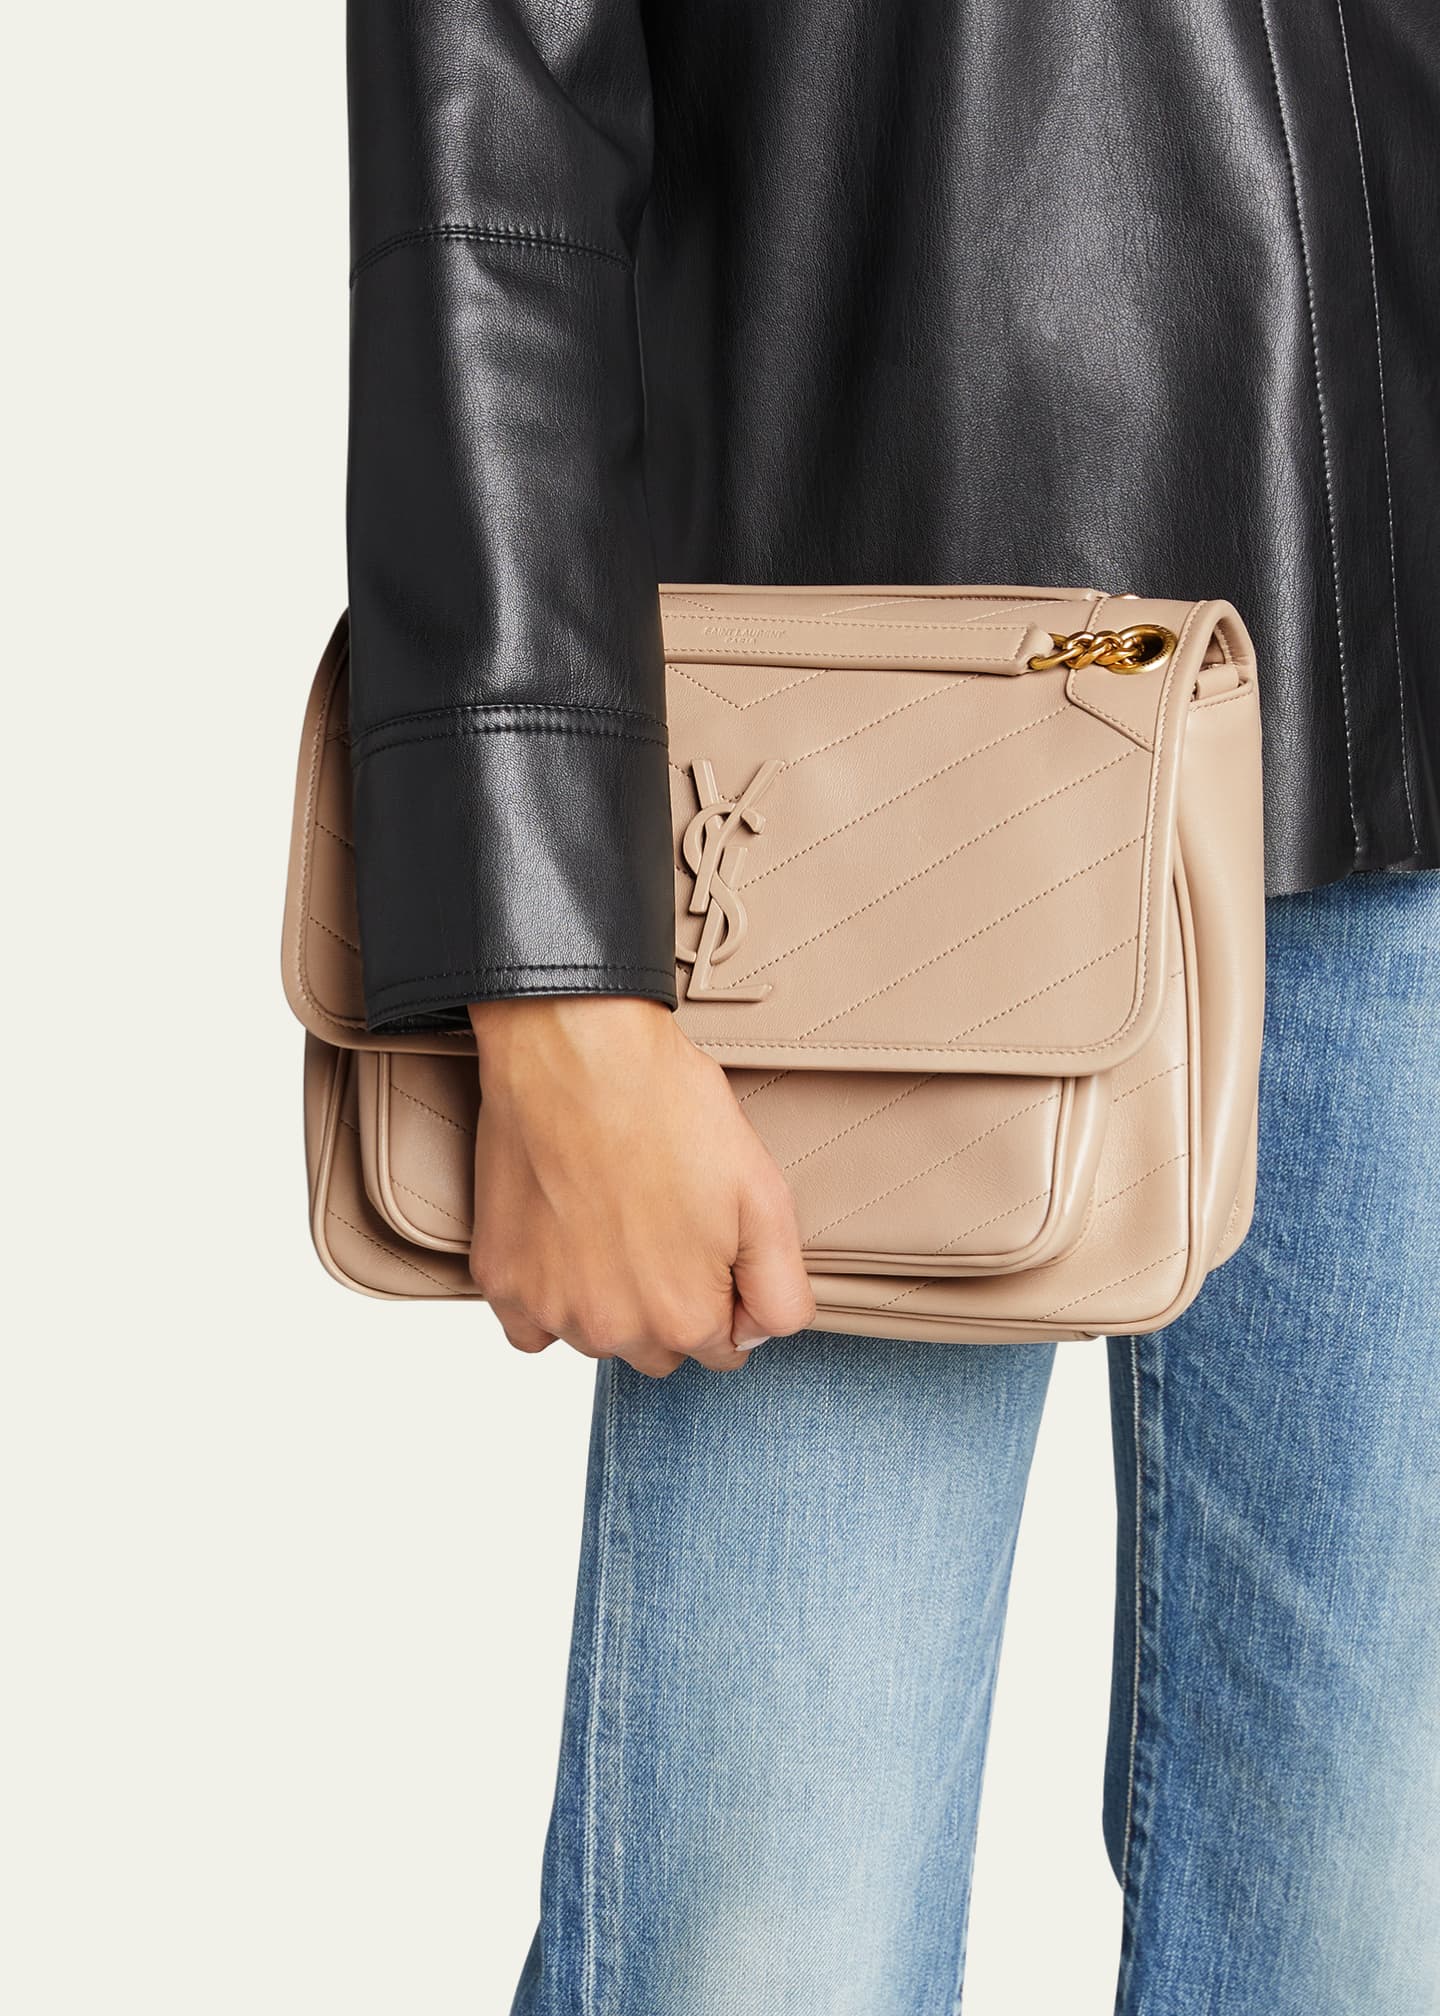 Saint Laurent Niki Medium Quilted Leather Shoulder Bag